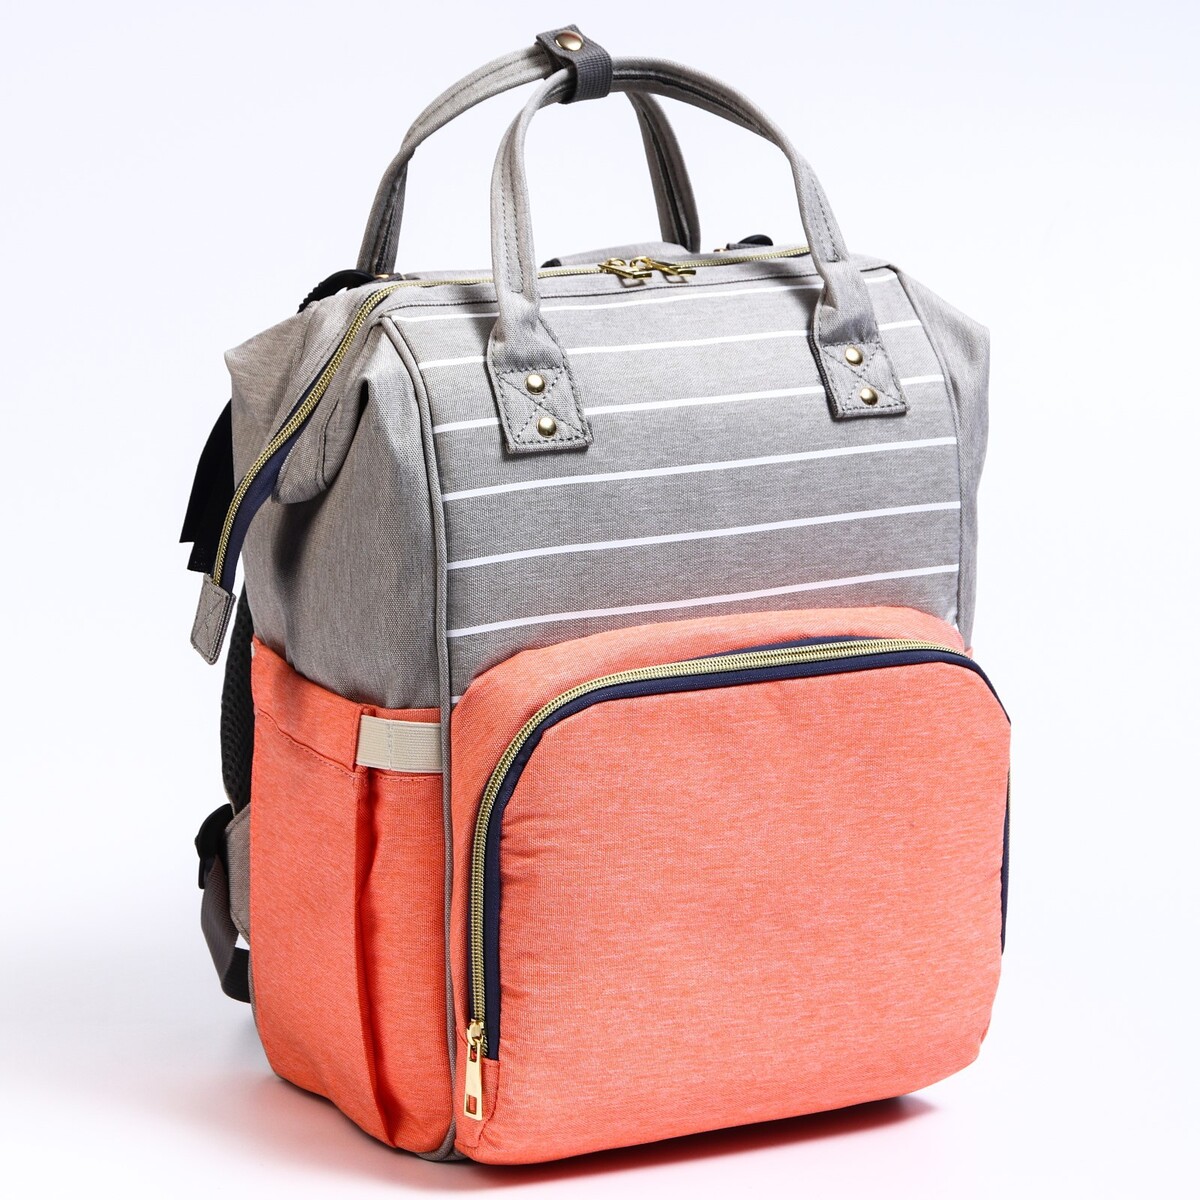 Рюкзак женский с термокарманом, термосумка - портфель, цвет серый/розовый рюкзак женский с термокарманом термосумка портфель синий